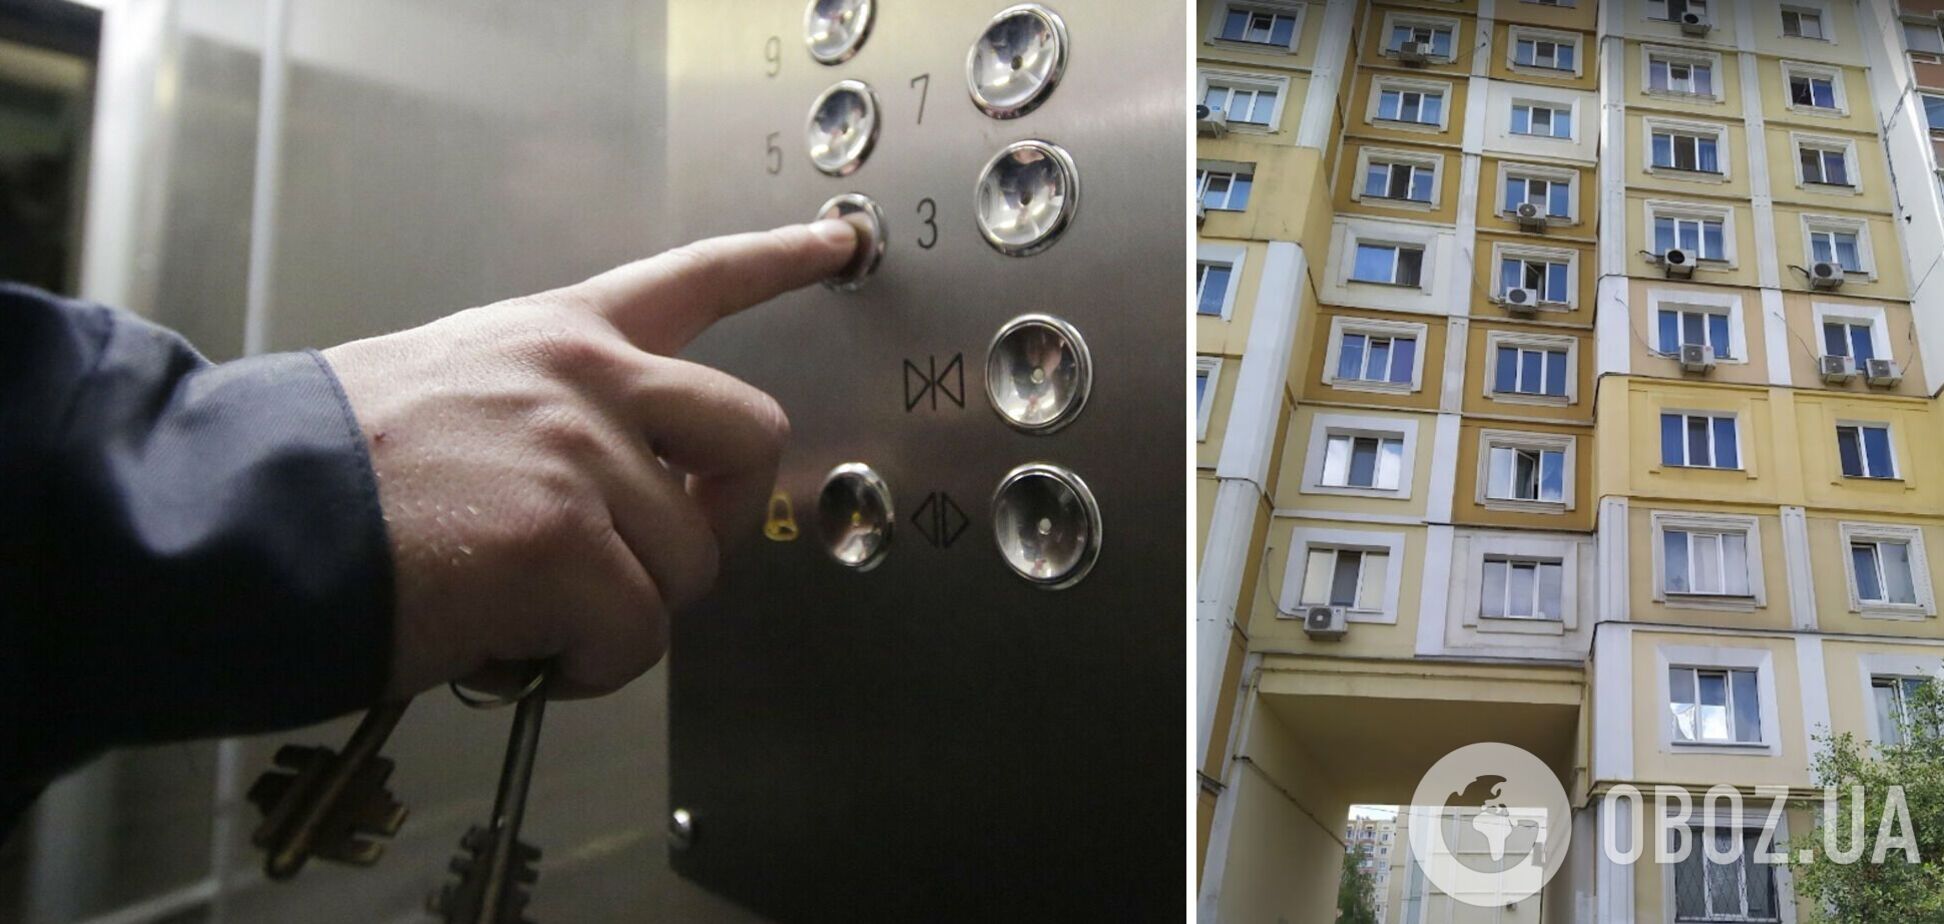 На Харьковщине в многоэтажке сорвался лифт с людьми, есть пострадавшие. Видео